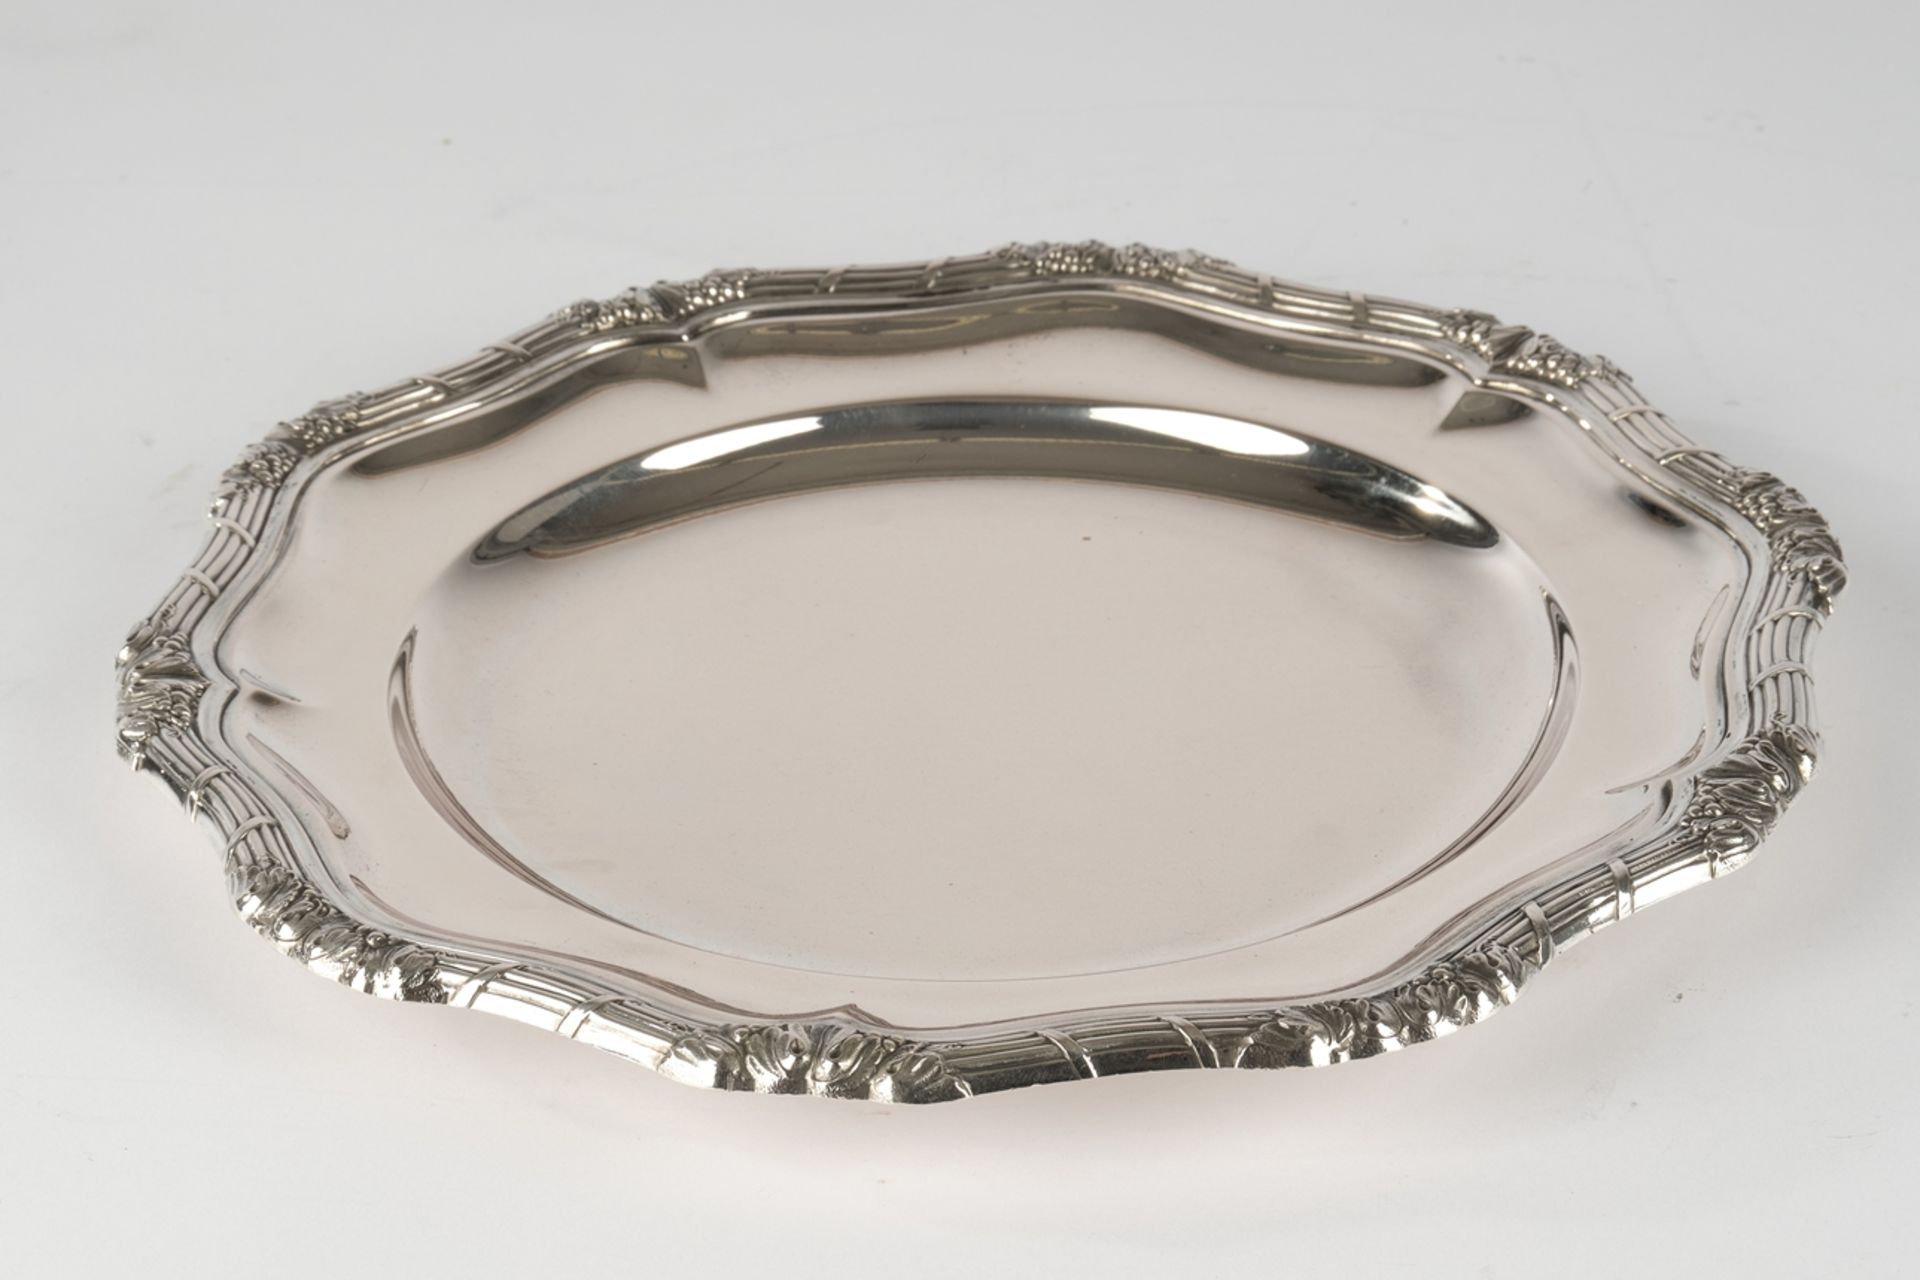 Anbietteller, Silber 800, Wilkens, profilierter Rand mit Blatt- und Bandzier, ø 27 cm, ca. 596 g